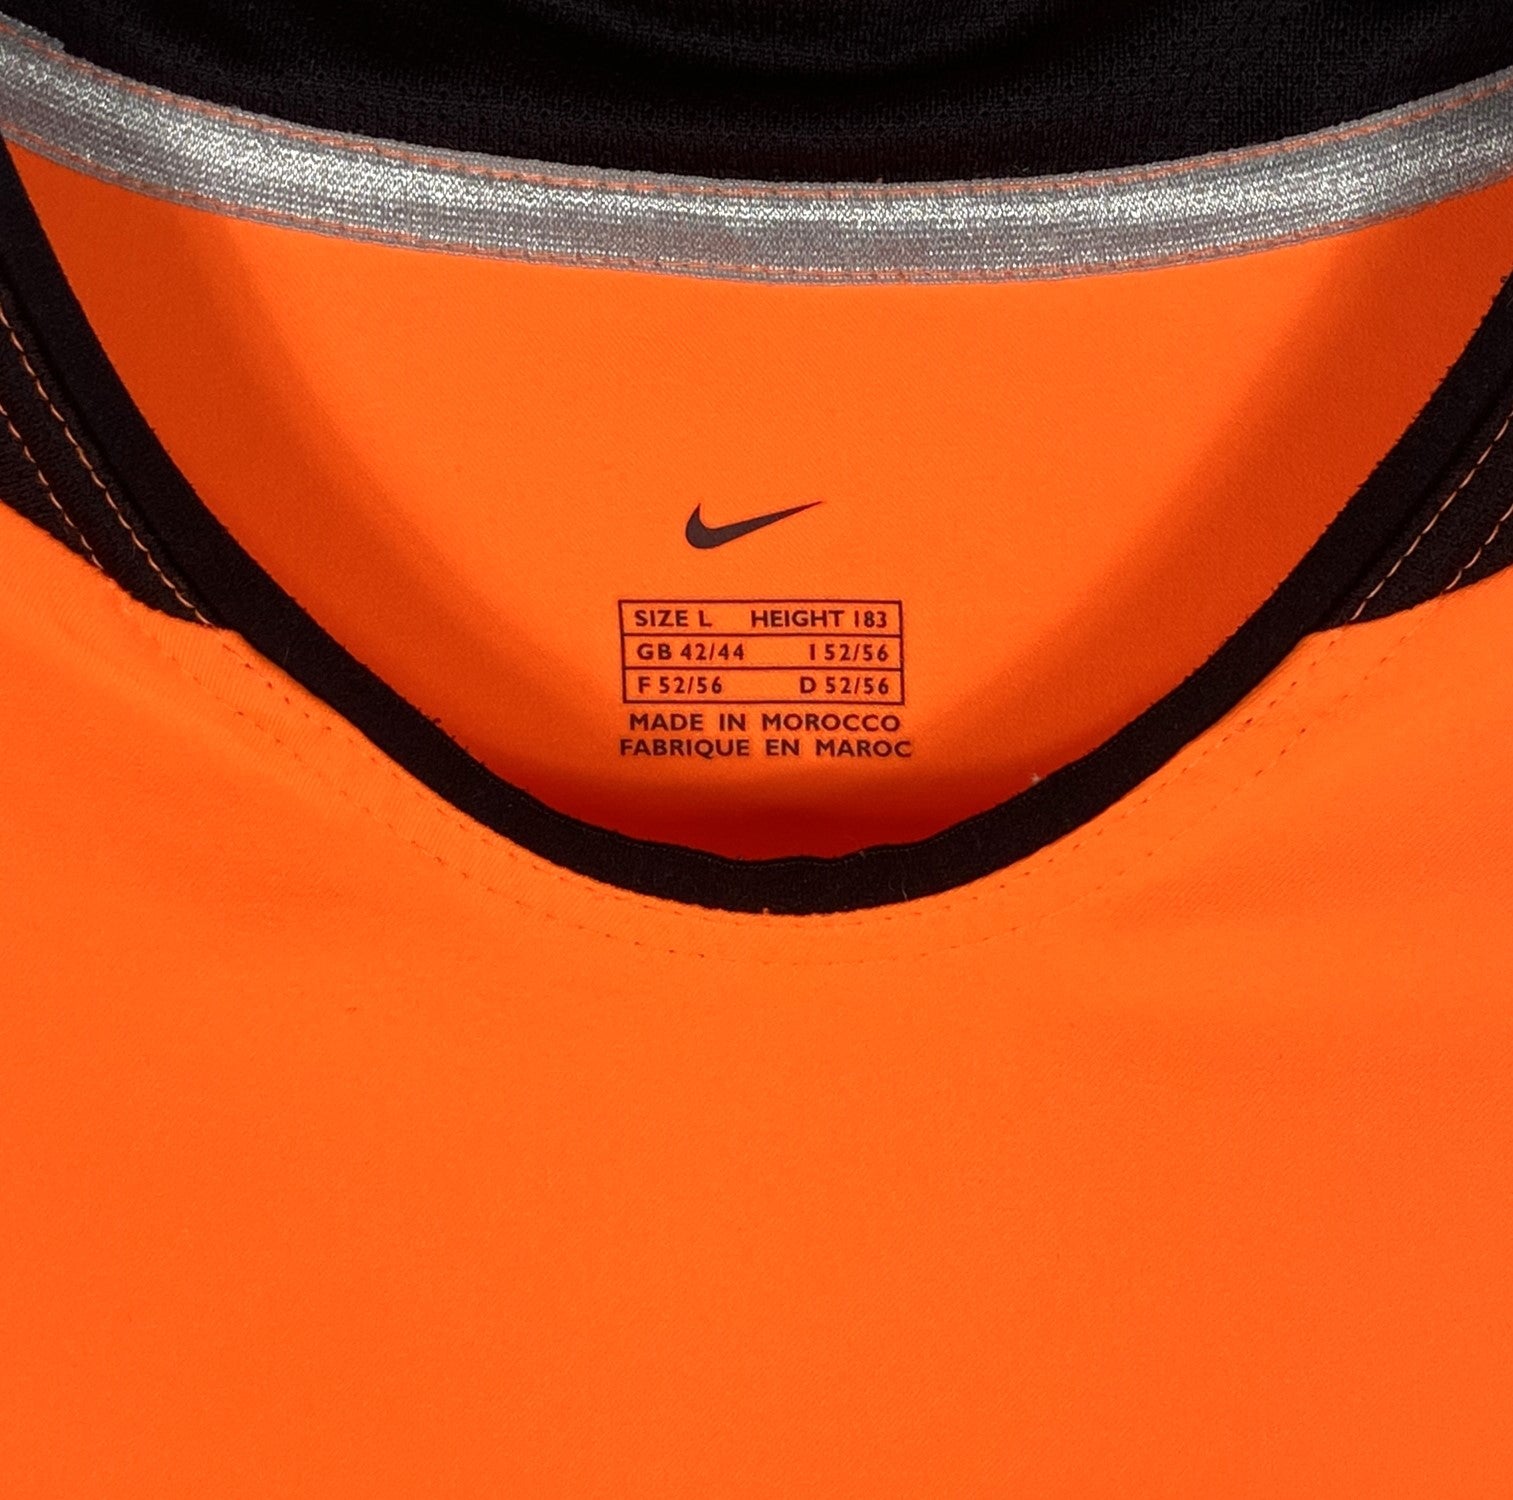 Netherlands 2002 2003 2004 home shirt jersey orange Holland Nike 182359 L